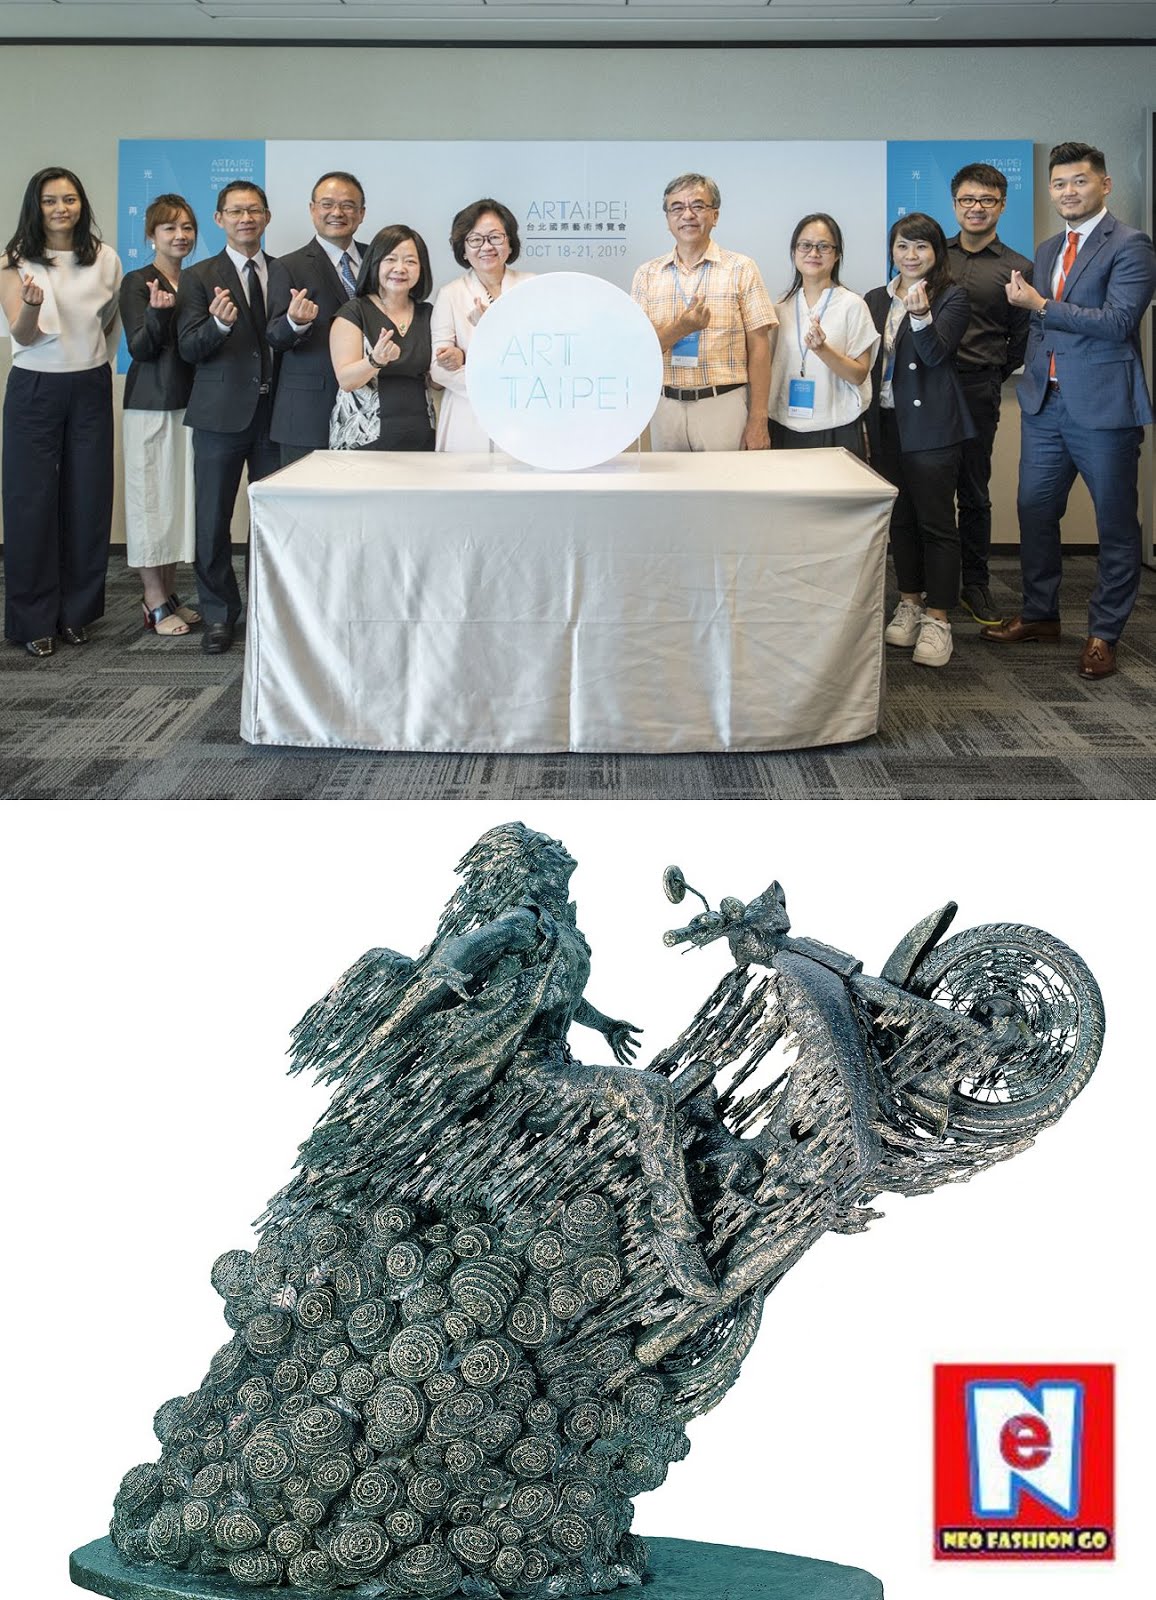 CWNTP 2019「台北國際藝術博覽會」ART TAIPEI 鍾經新:「MIT新人推薦特區」媒材類型多元，展現與市場對話的企圖 ...